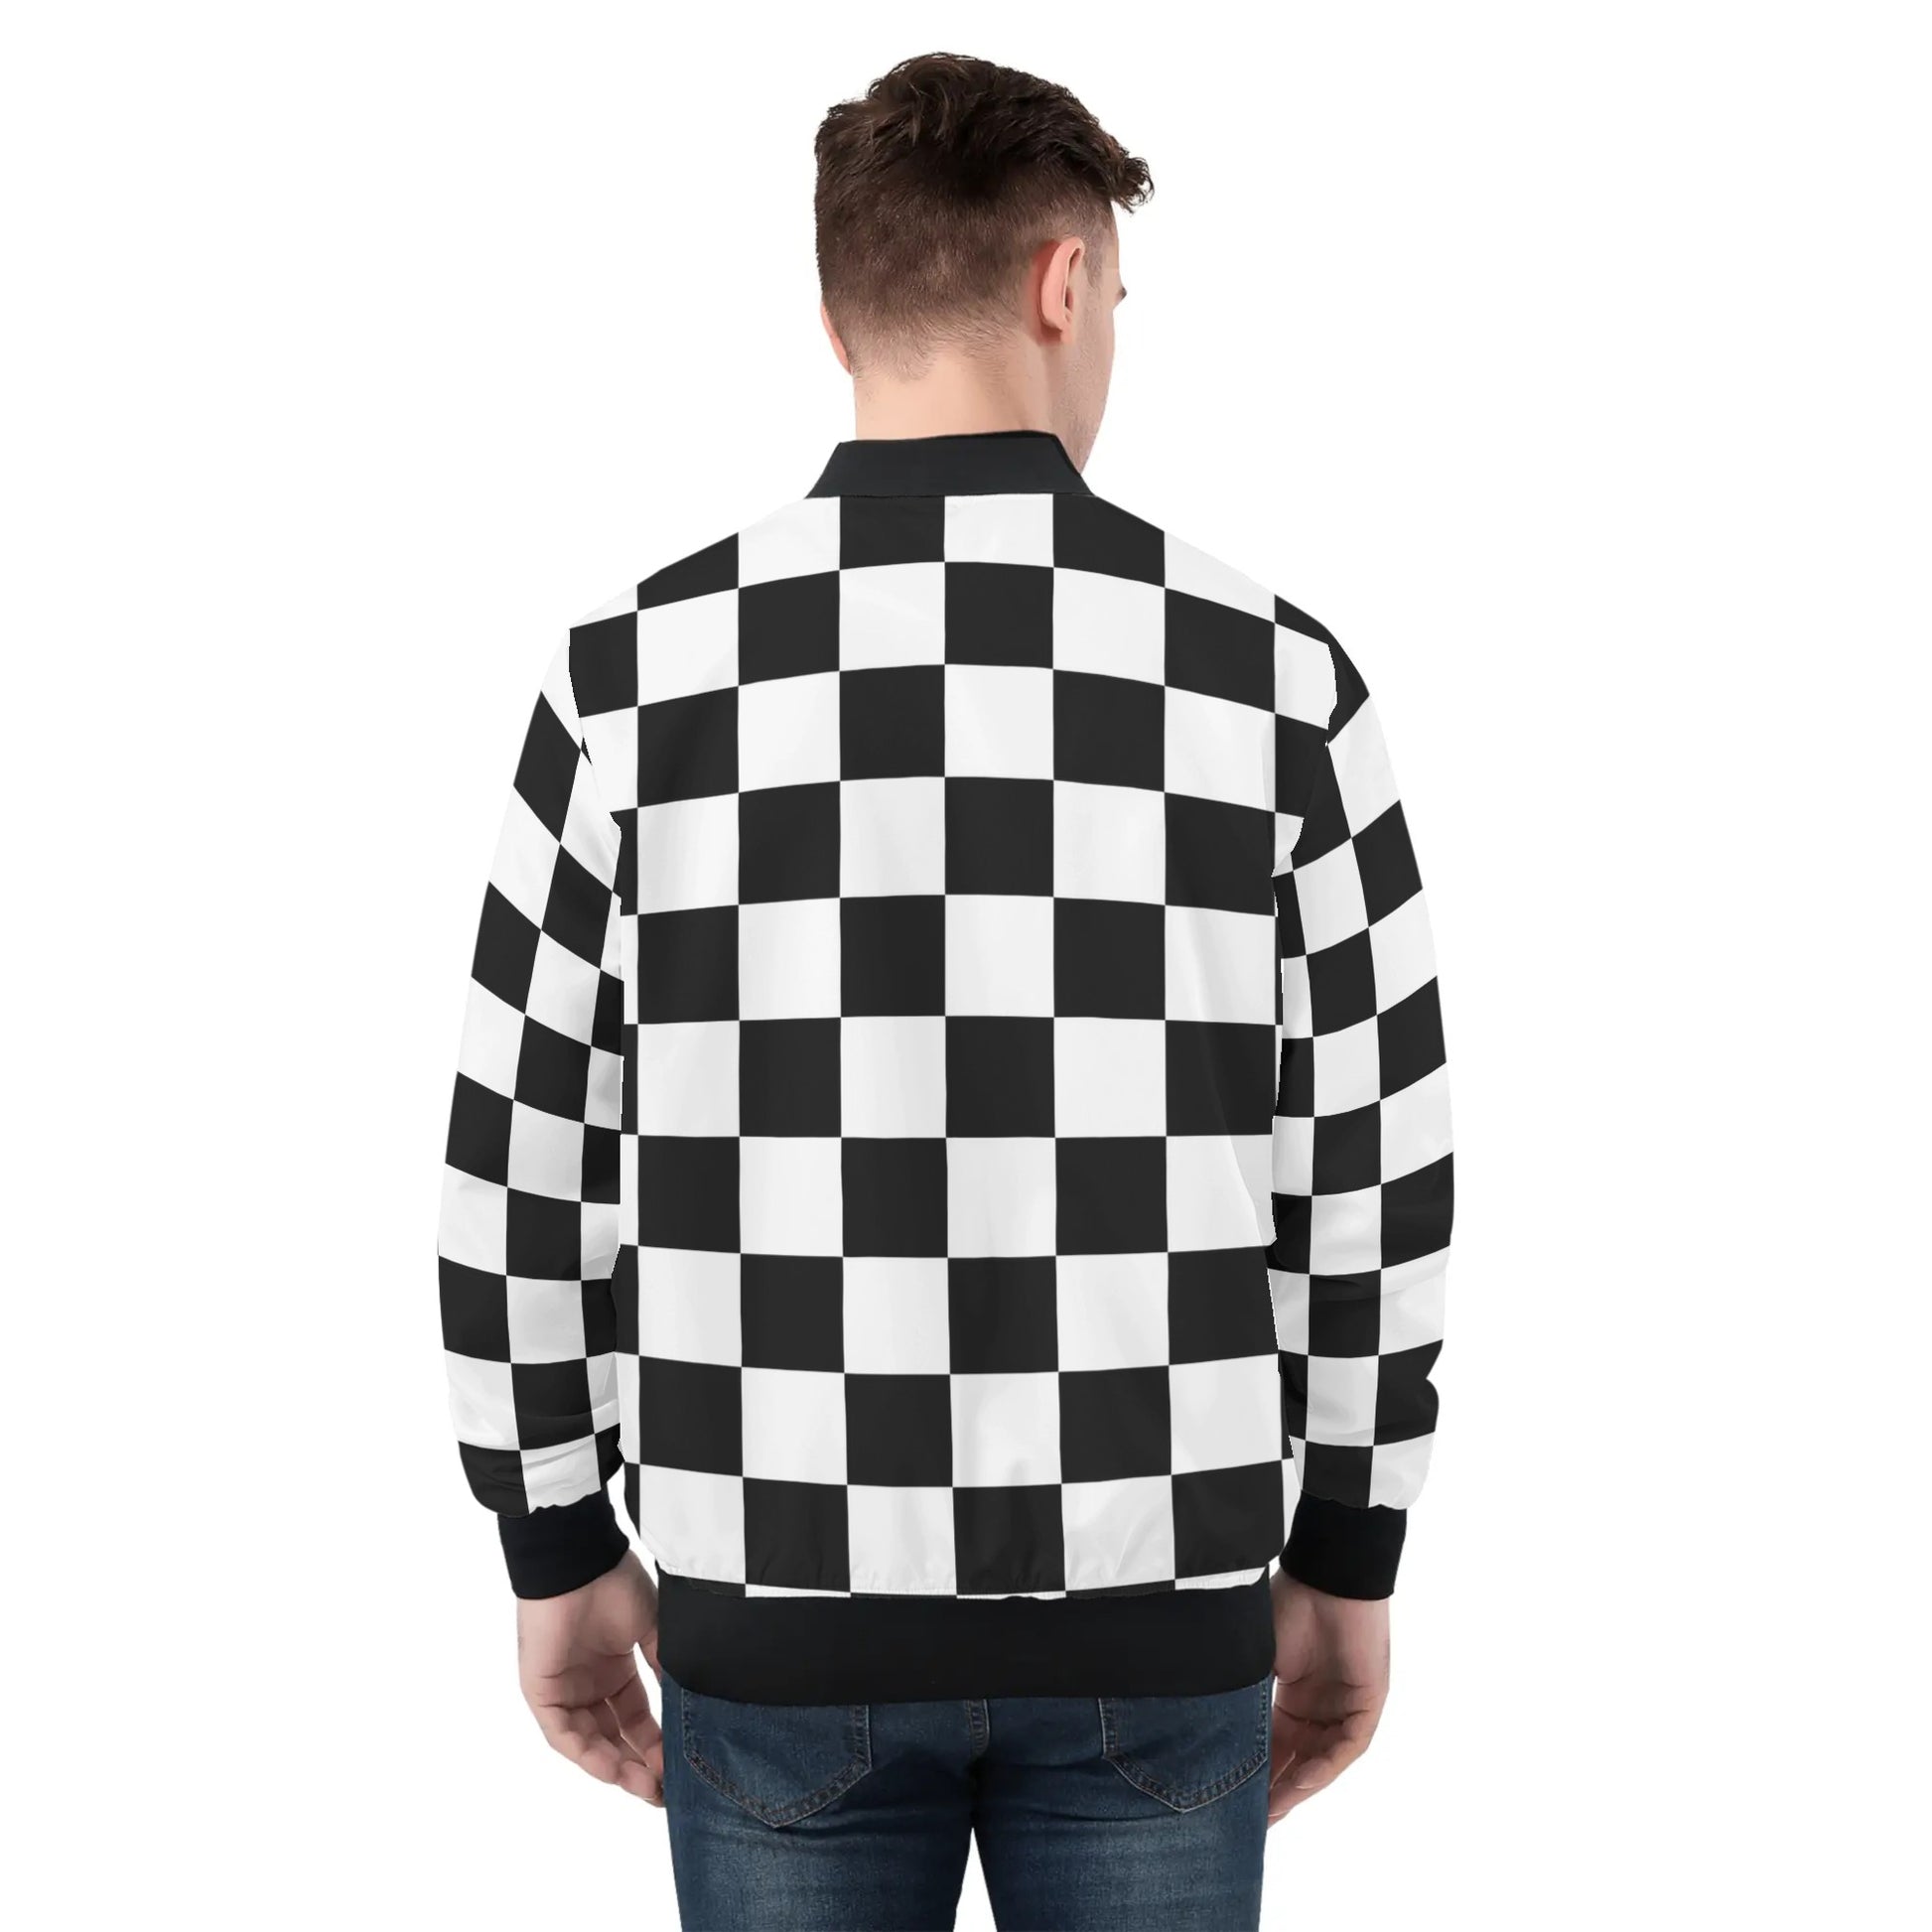 Black & White Bomber Jacket | Chessboard